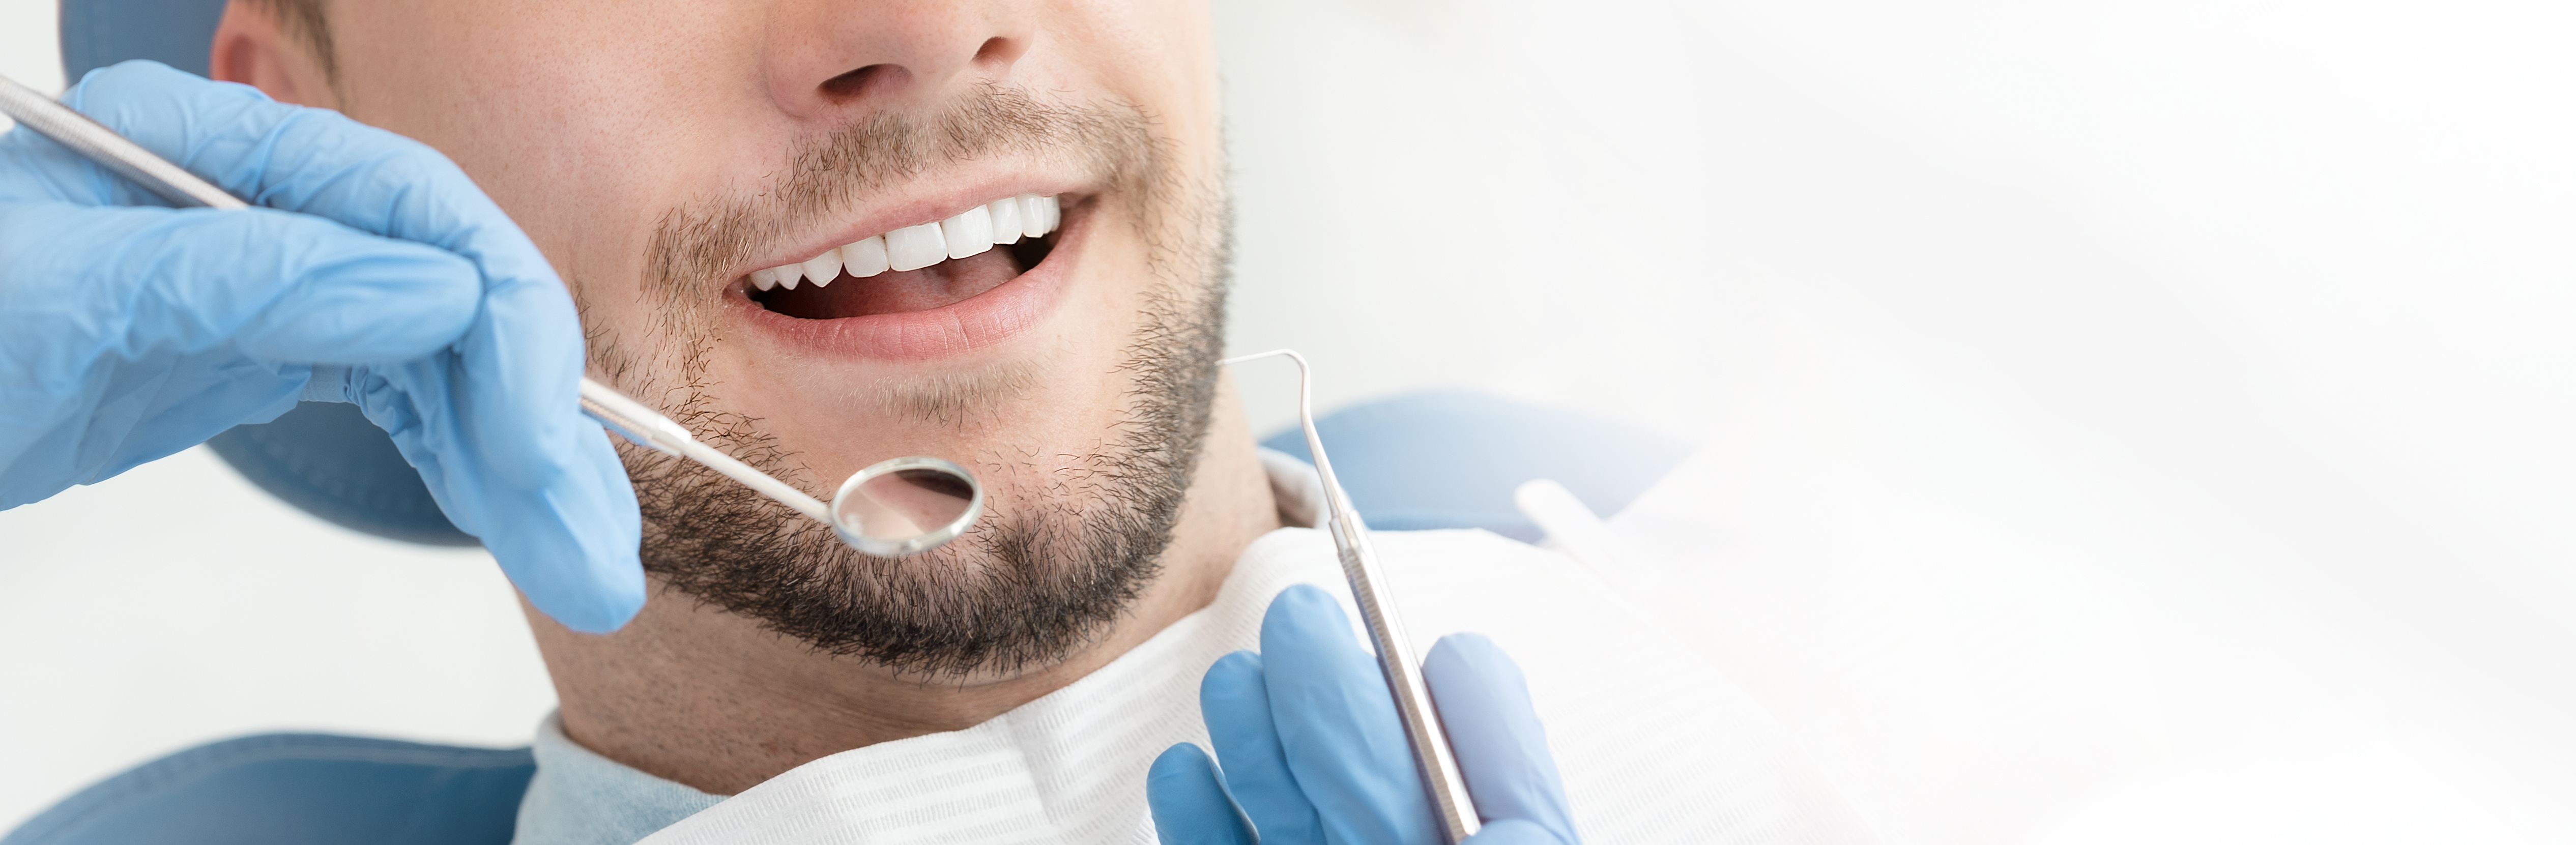 Man having a dental check up